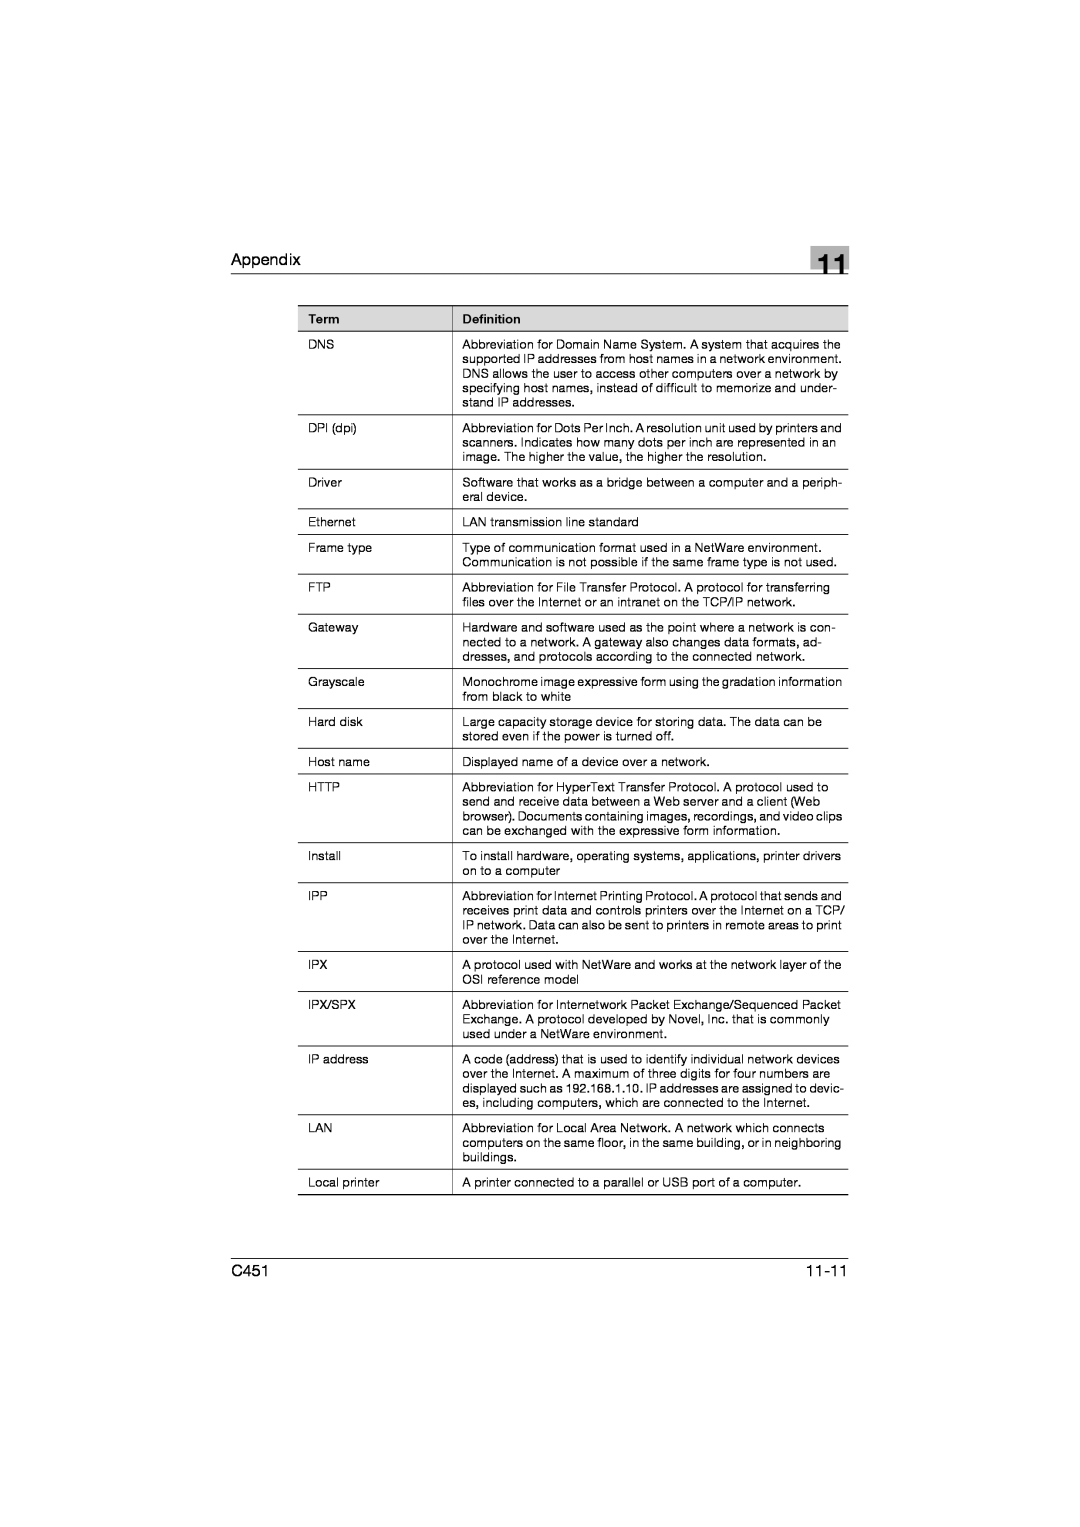 Konica Minolta C451 manual Appendix, 11-11 